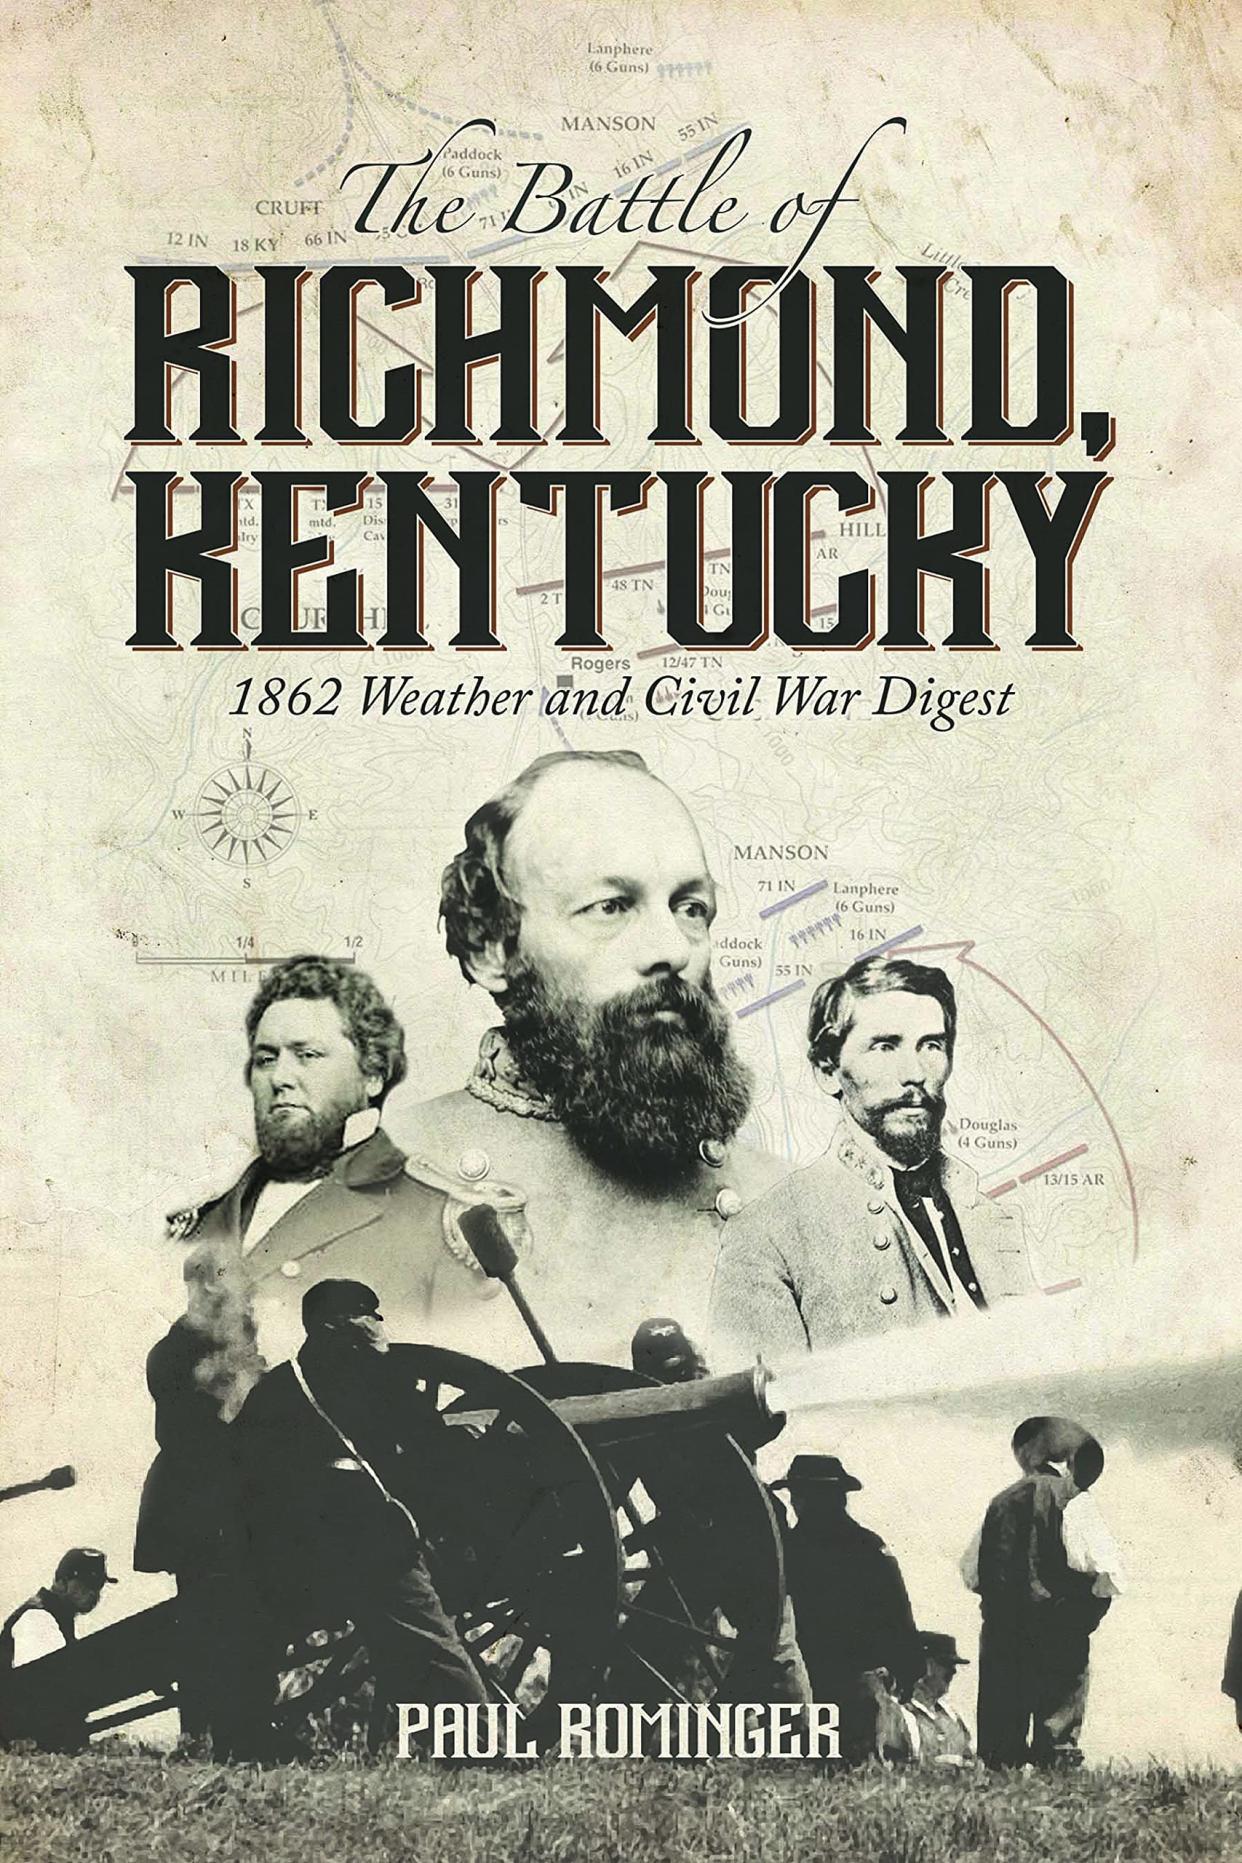 "The Battle of Richmond, Kentucky" by Paul Rominger